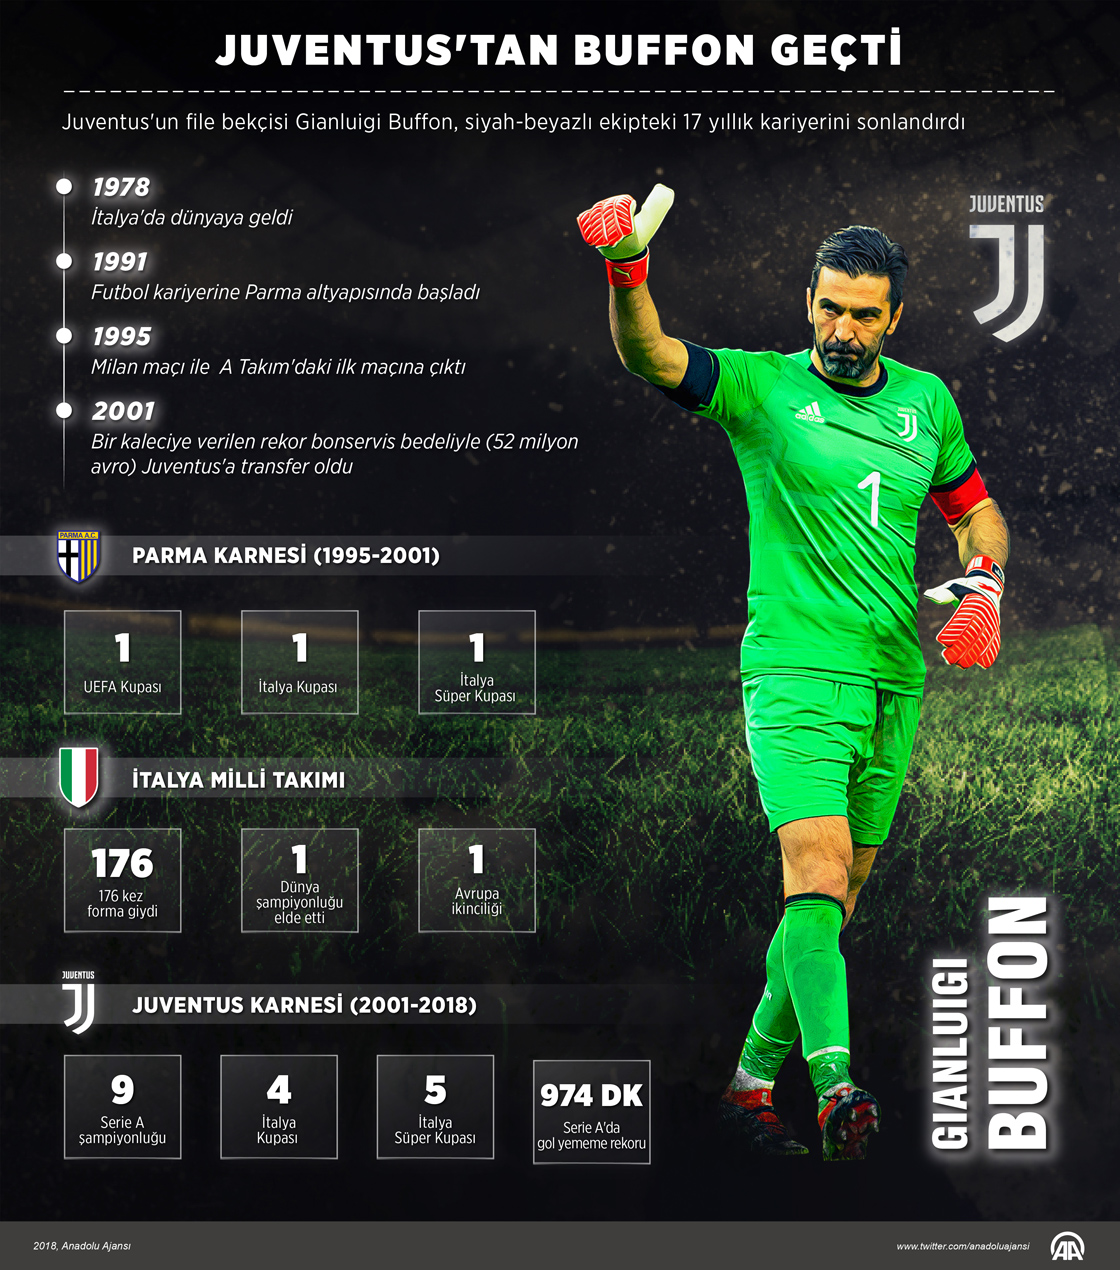 Juventus'tan Buffon geçti